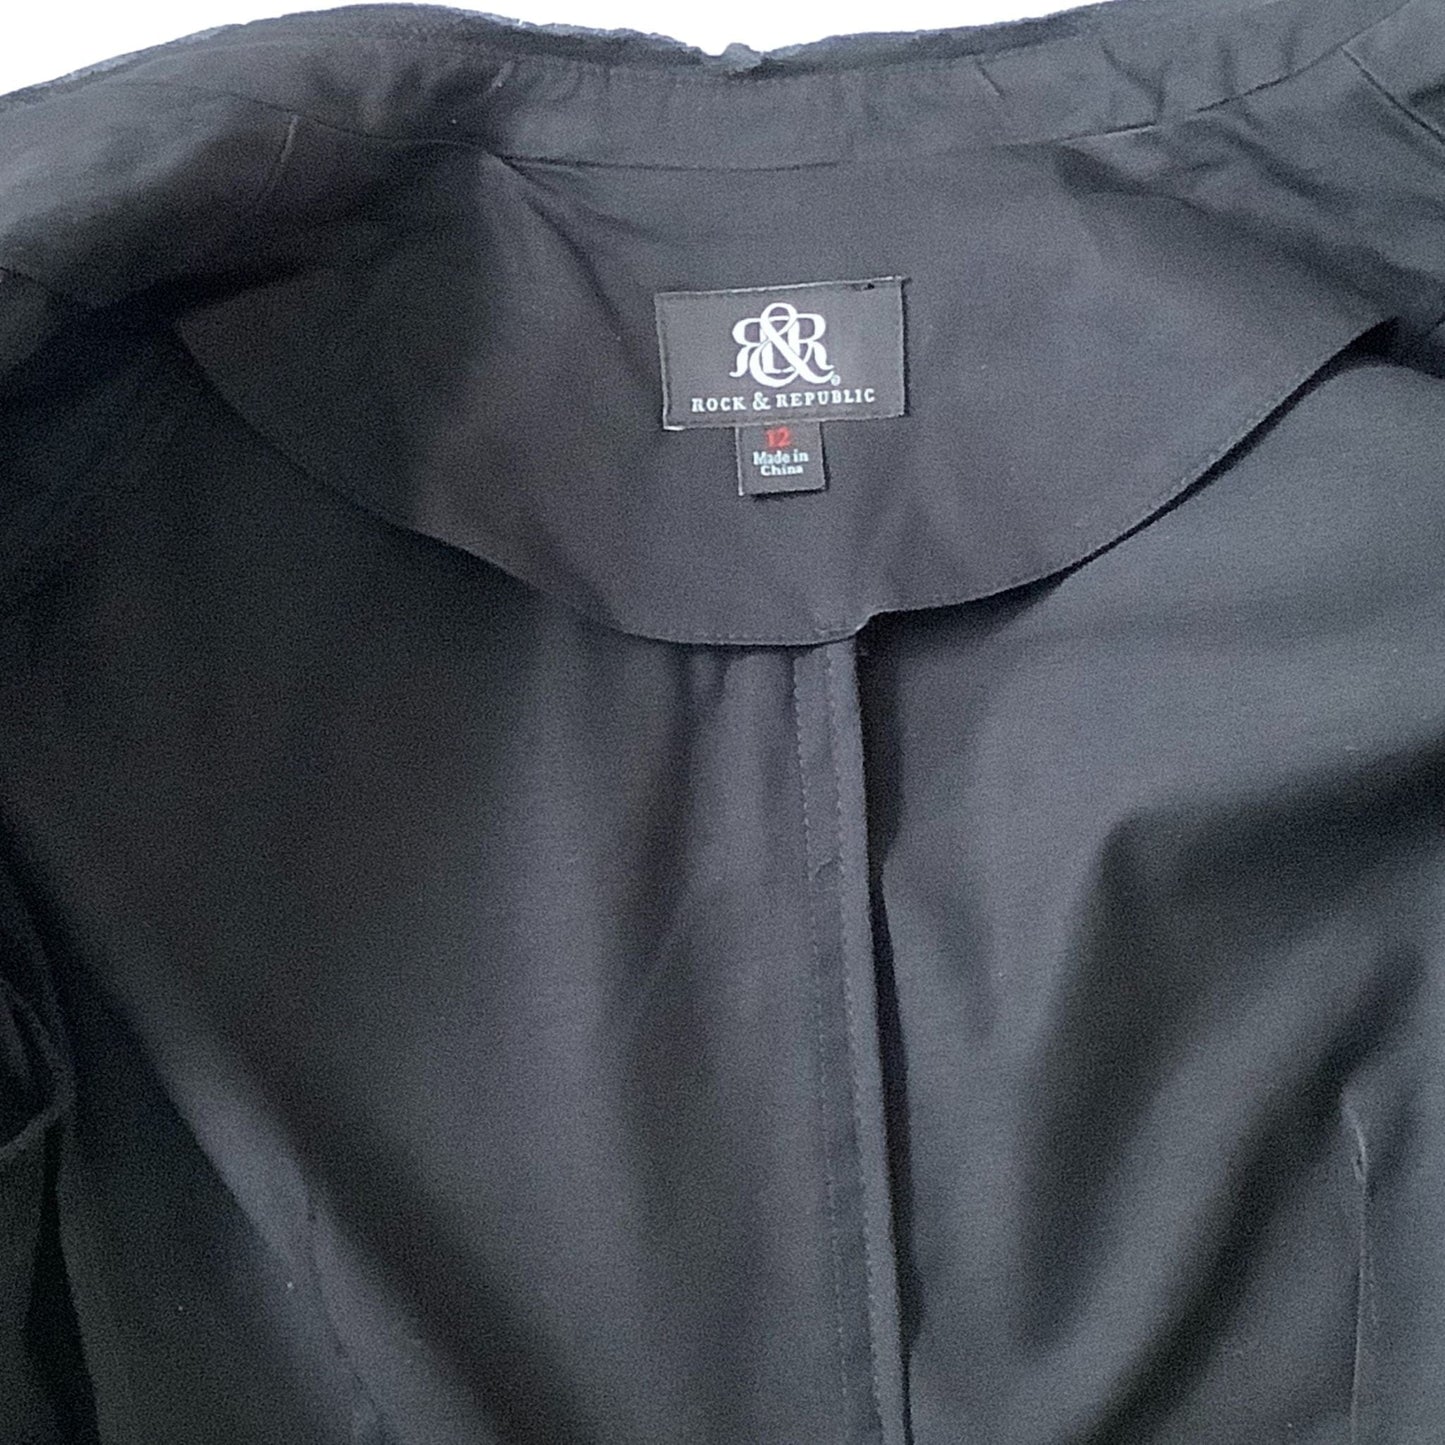 Rhinestone Embellished Jacket